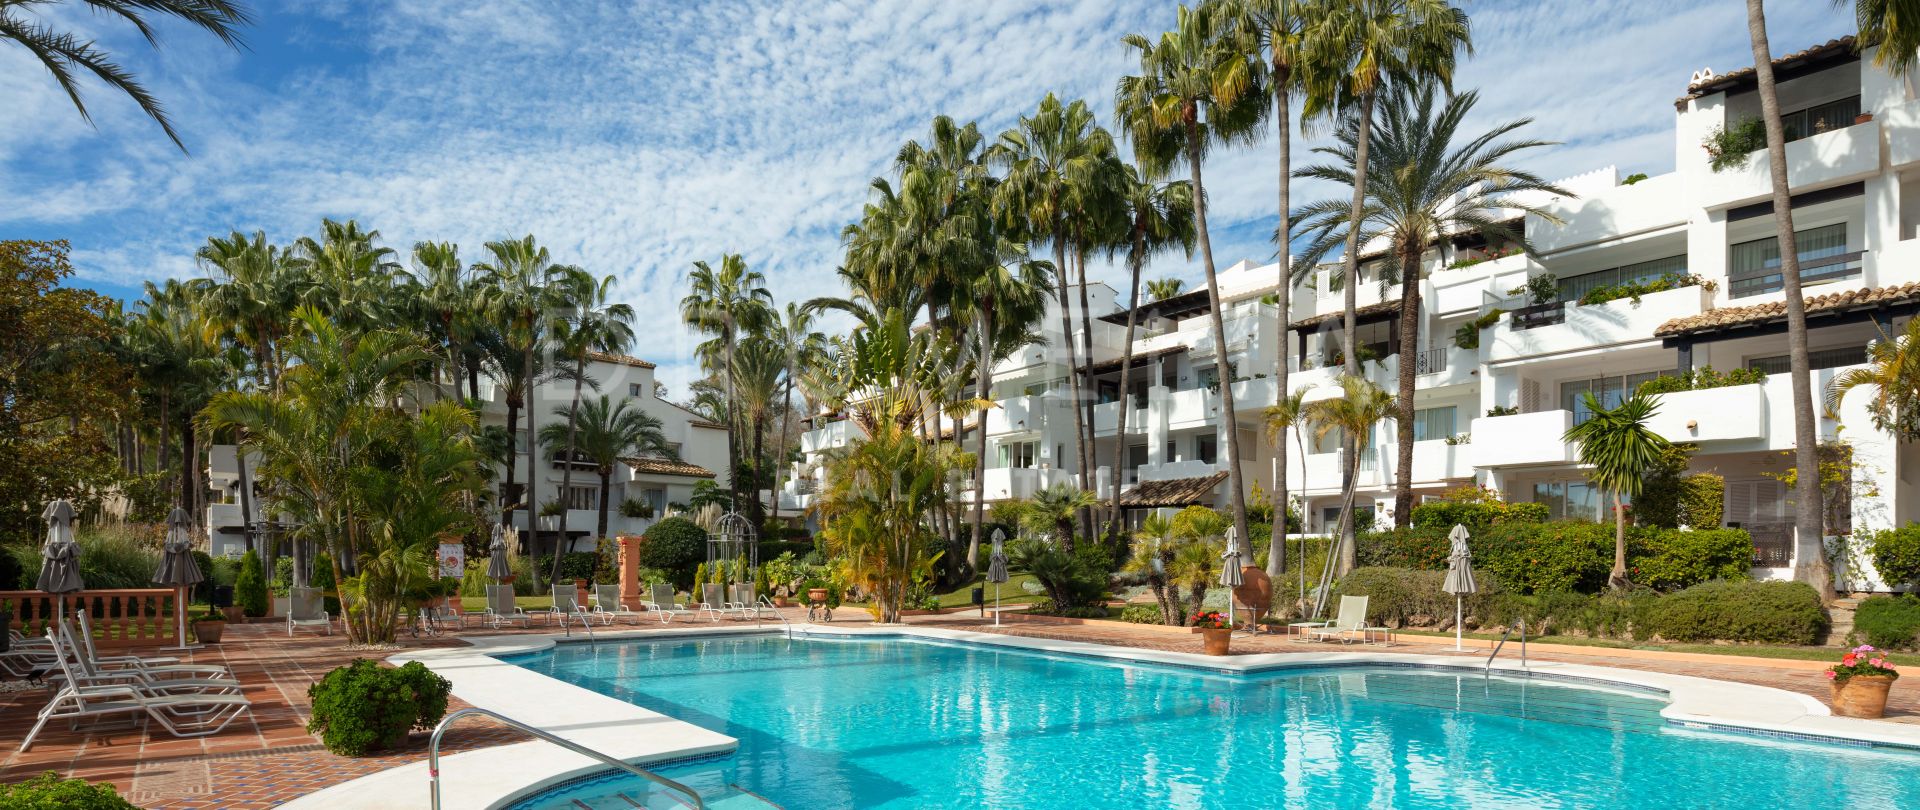 Renovierte, stilvolle und moderne Luxuswohnung in der stilvollen Marina Puente Romano, Marbella Golden Mile